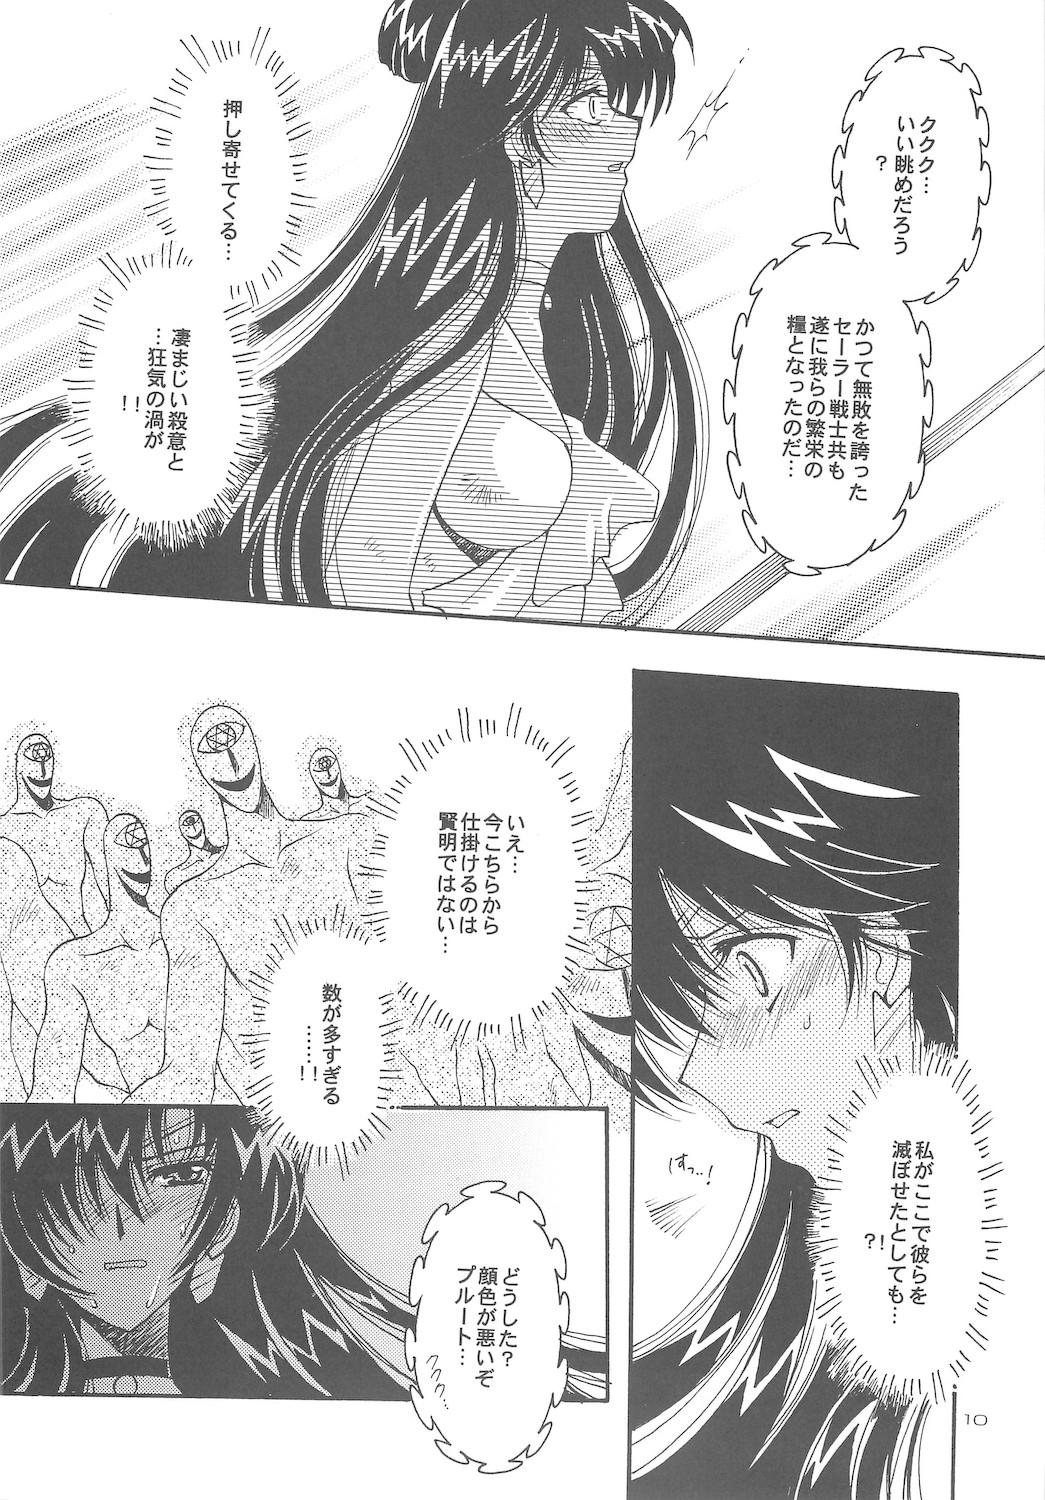 Massive Owaru Sekai dai 4 shou - Sailor moon Workout - Page 10